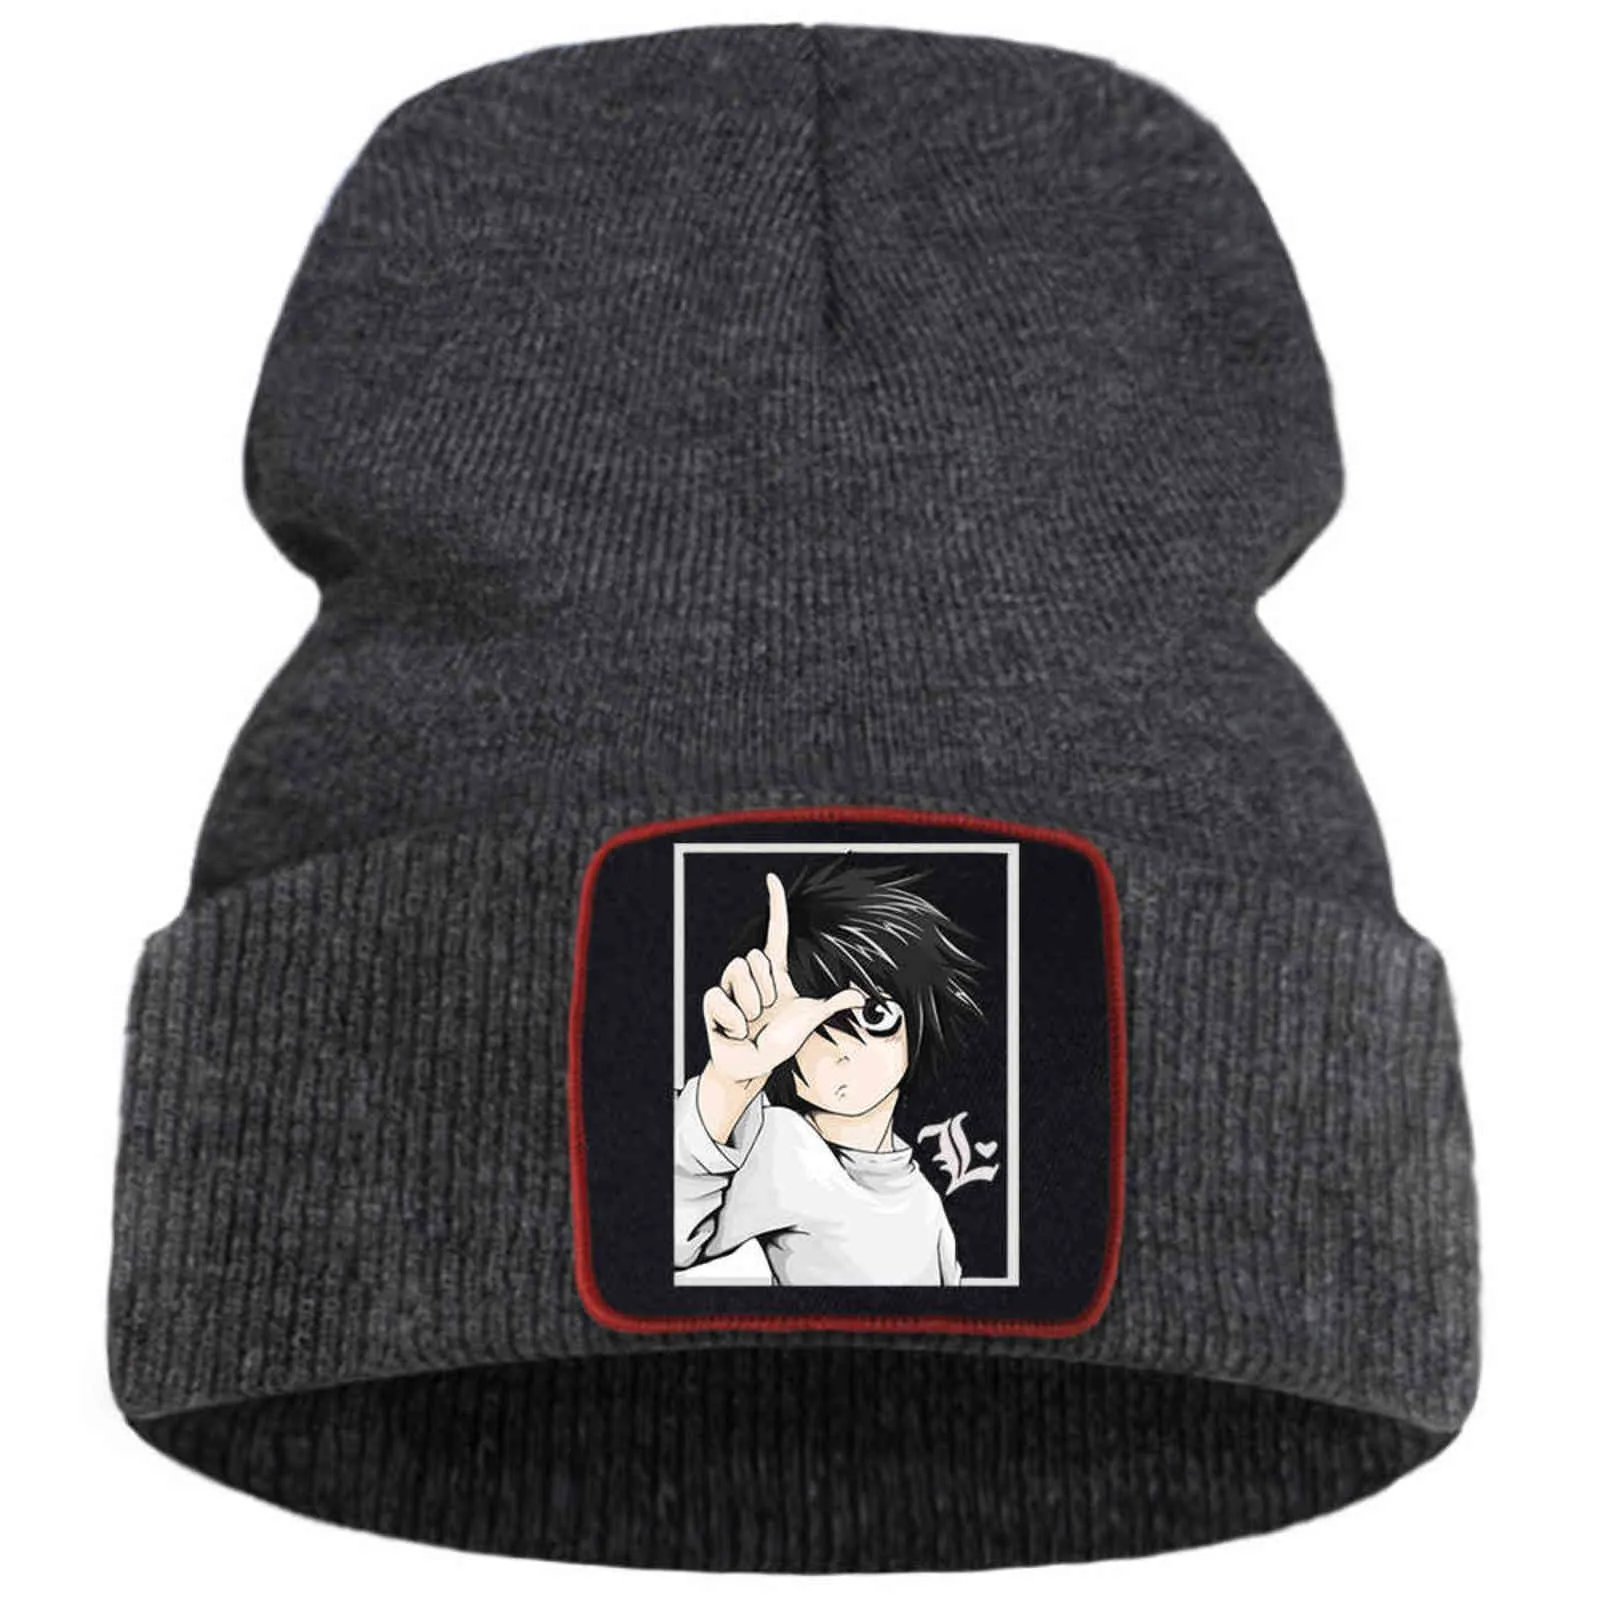 日本アニメデスノートビーニー帽子冬の綿の暖かいボンネットキャップソリッドカラーヒップホップニットキャップユニセックスカジュアルスカーフ帽子Y21111